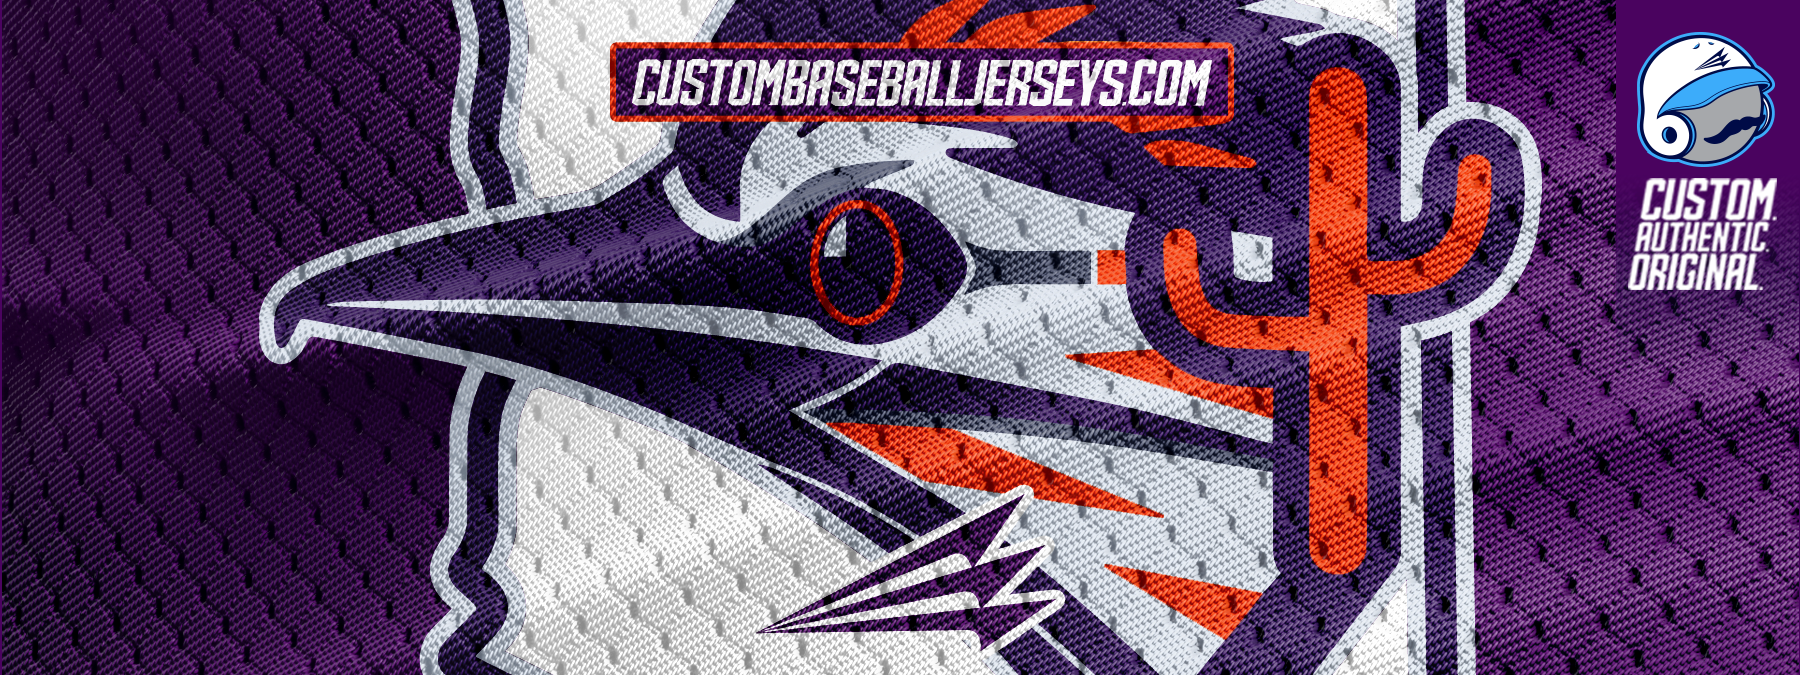 Custom baseball jerseys design baseballs jersey baseball jersey custom jersey